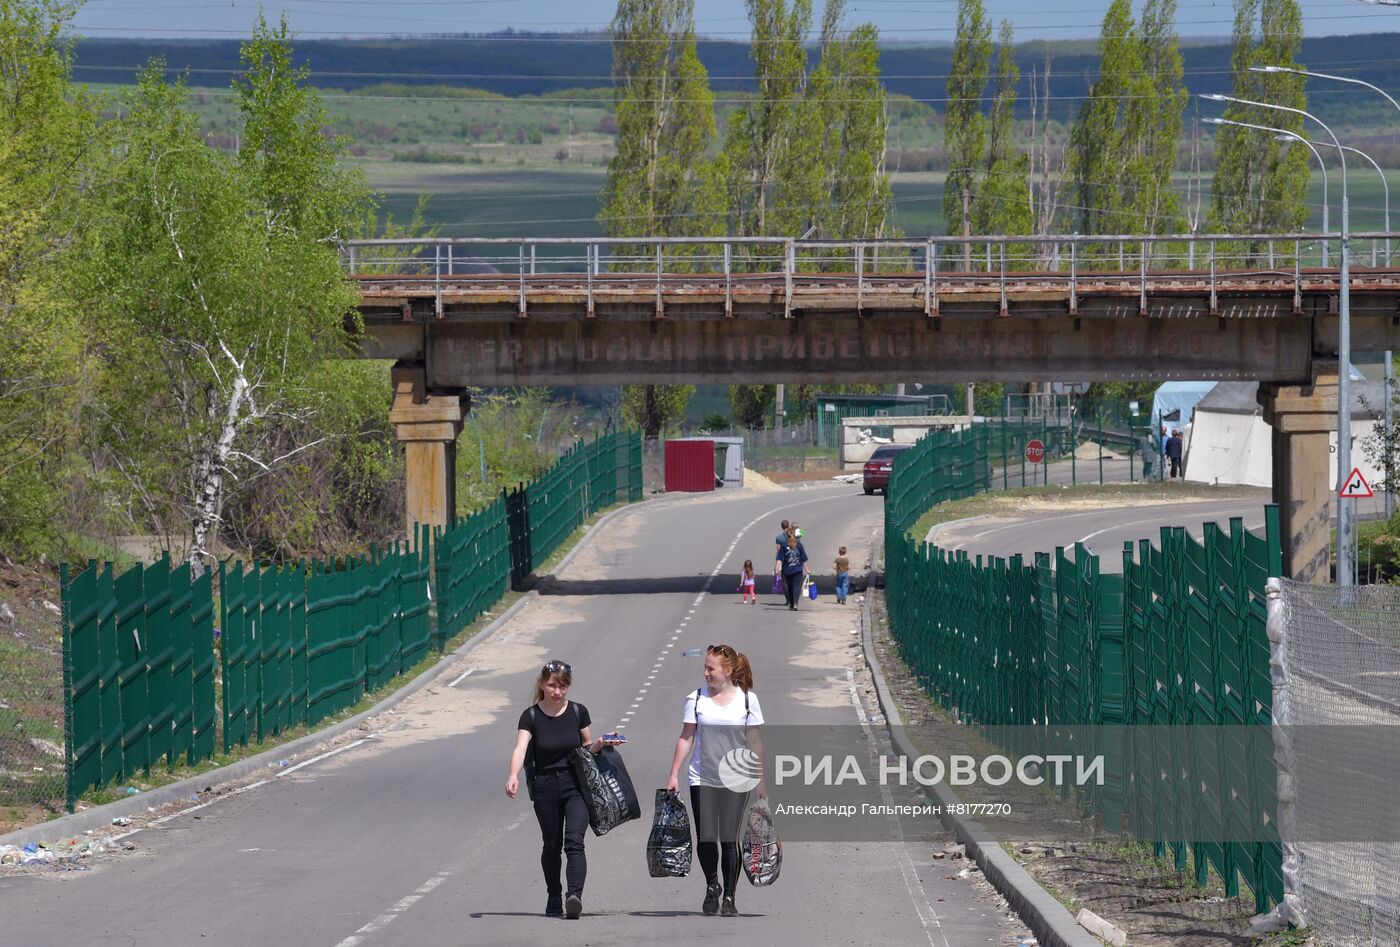 Открытие в освобожденном районе ЛНР таможенного поста на границе с РФ